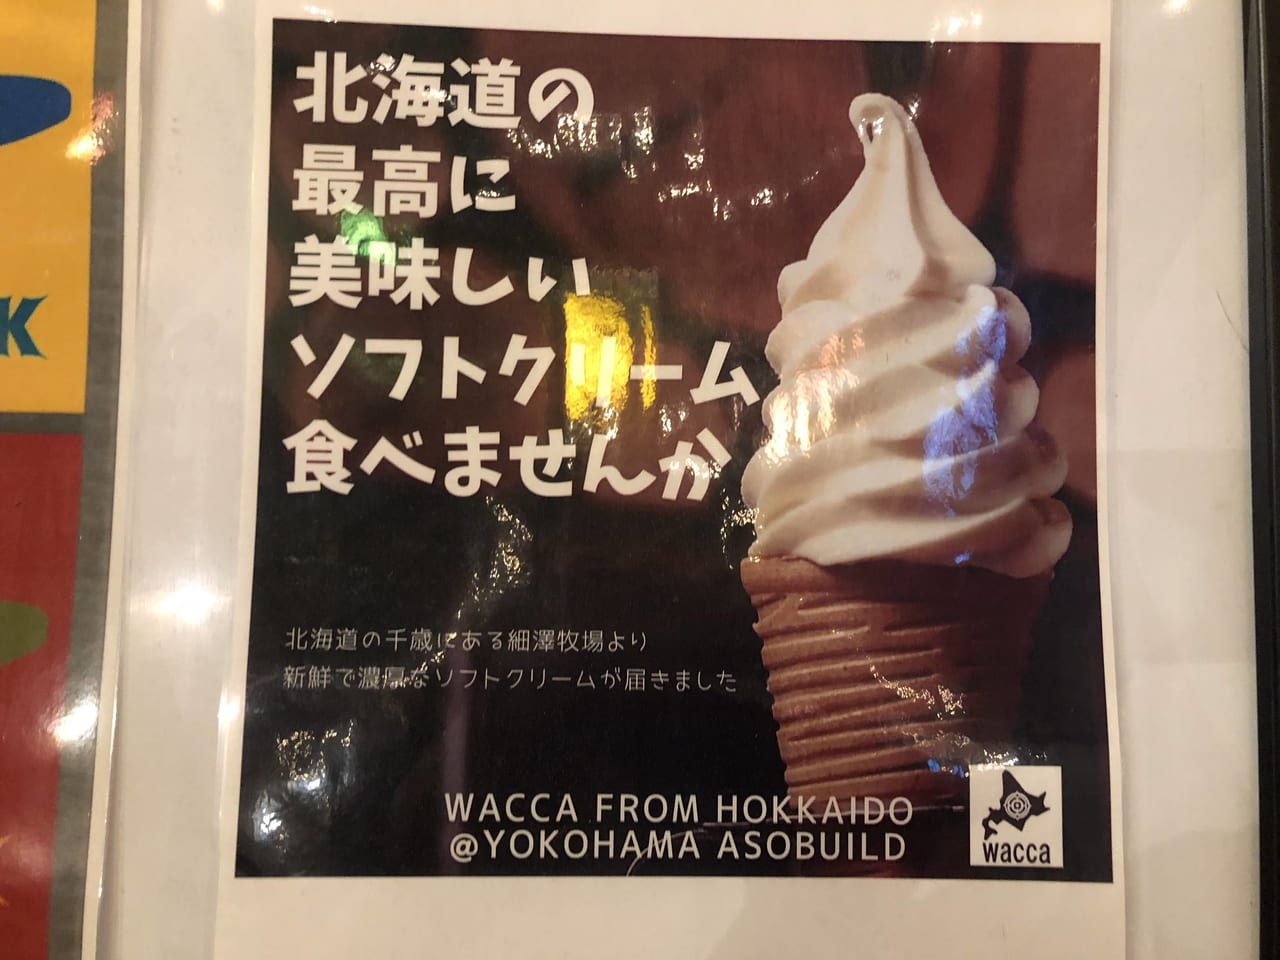 wacca from hokkaido